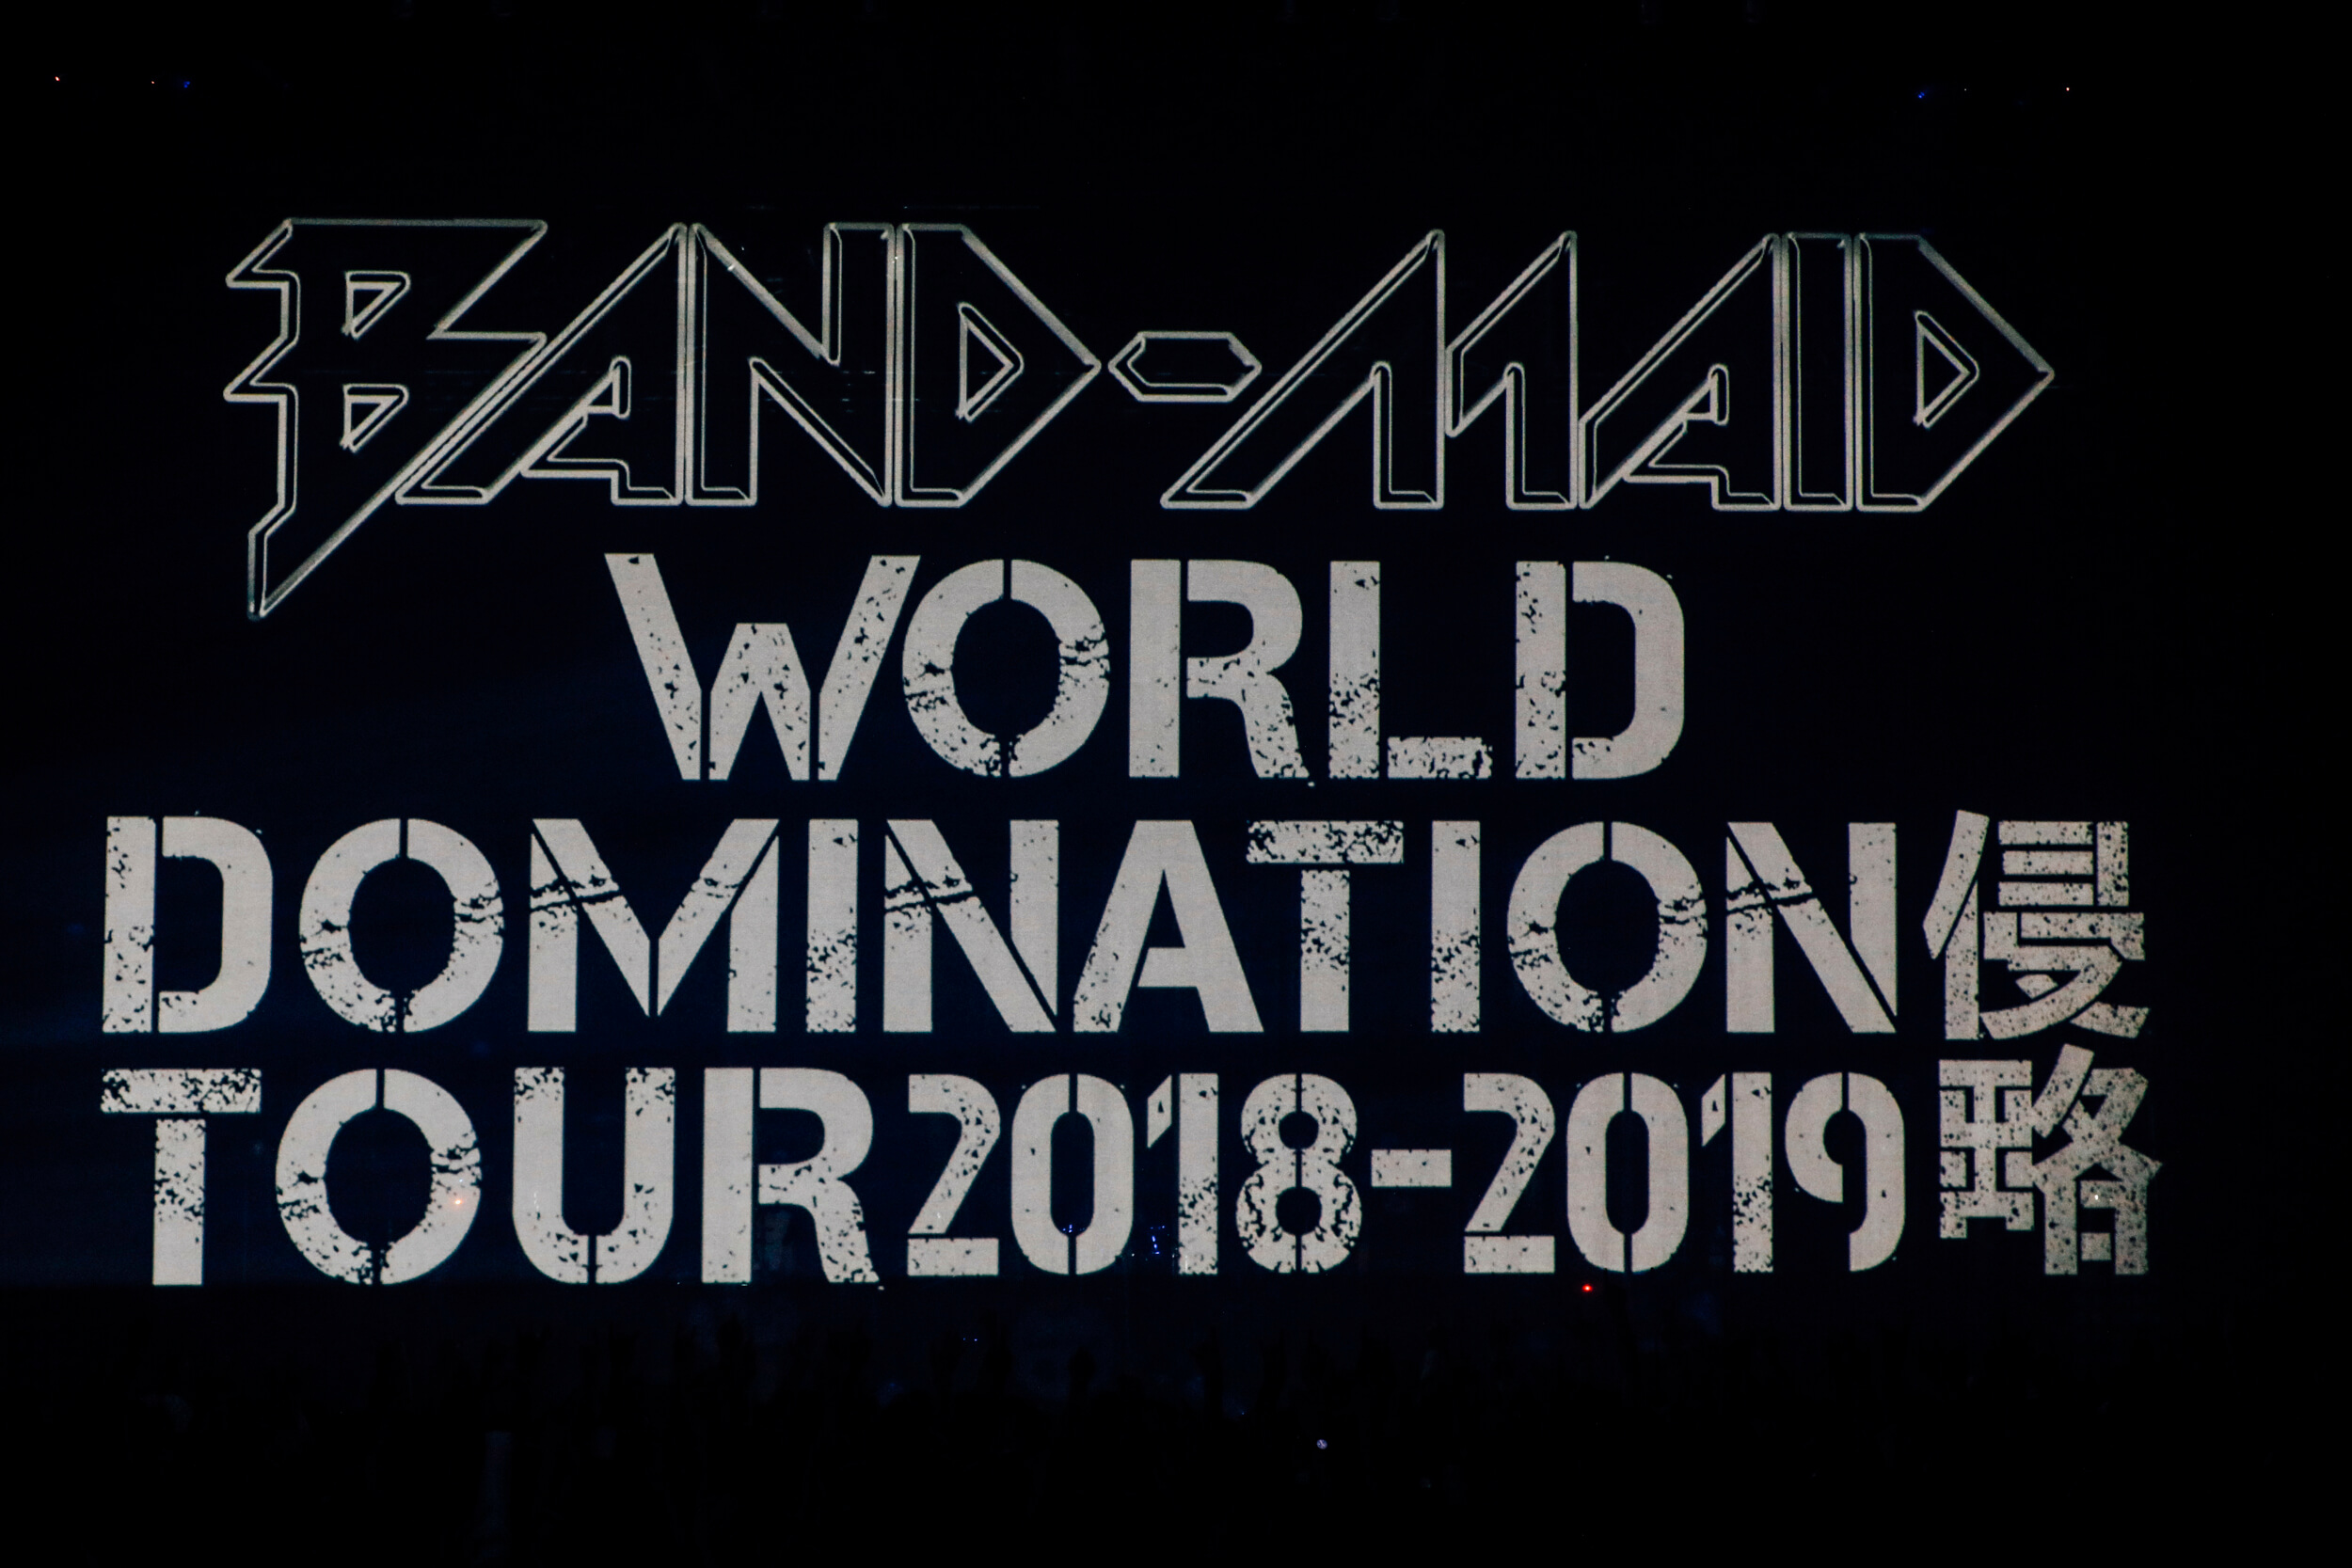 band-maid-world-domination-tour-2018-2019%e3%80%90%e4%be%b5%e7%95%a5%e3%80%911